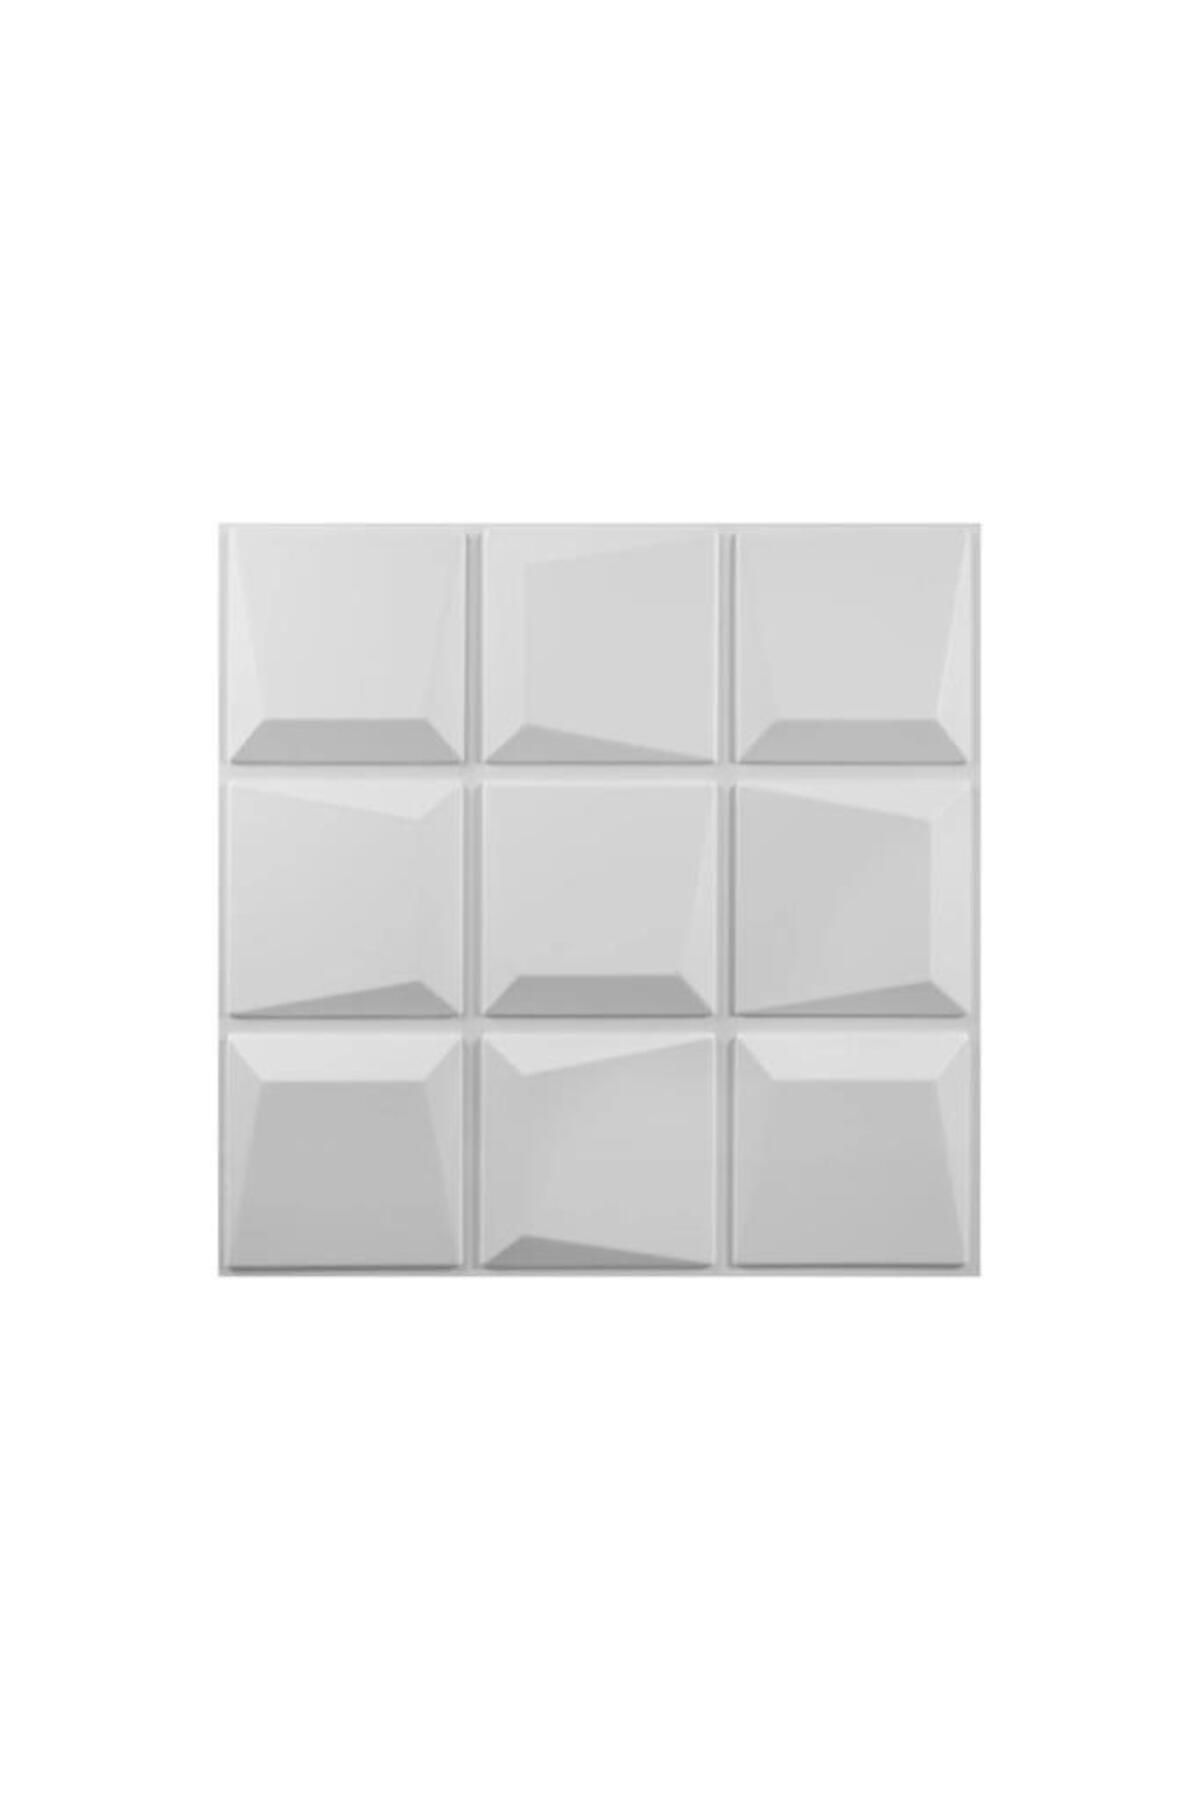 Renkli Duvarlar 50x50cm 1 Adet Yıkanabilir 3D Yapışkanlı Beyaz Geometrik Desen Boyanabilir Duvar Paneli Kağıdı ABS